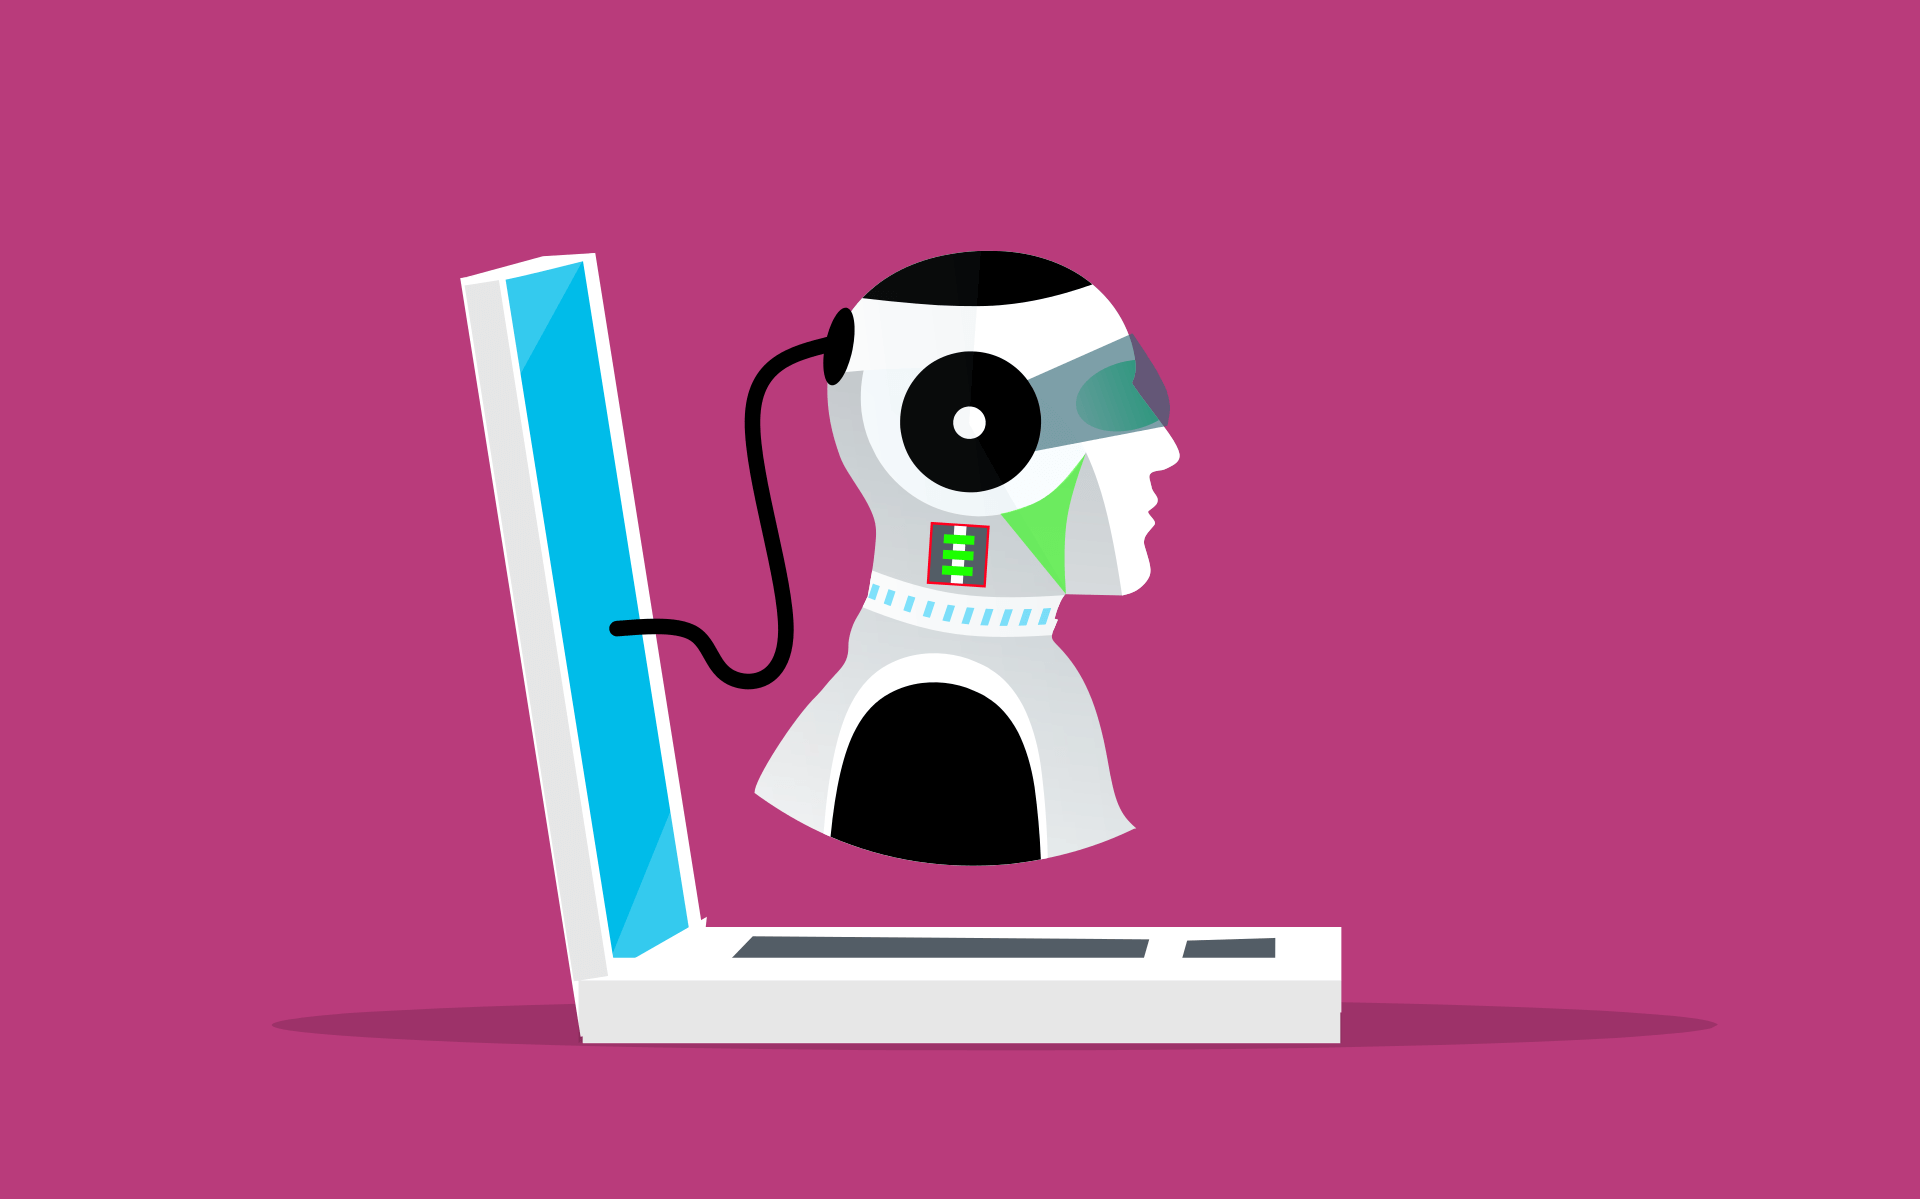 这是一张插画，展示了一个带耳机的机器人头部与一台笔记本电脑相连，背景为单一的粉红色。整体给人科技感。